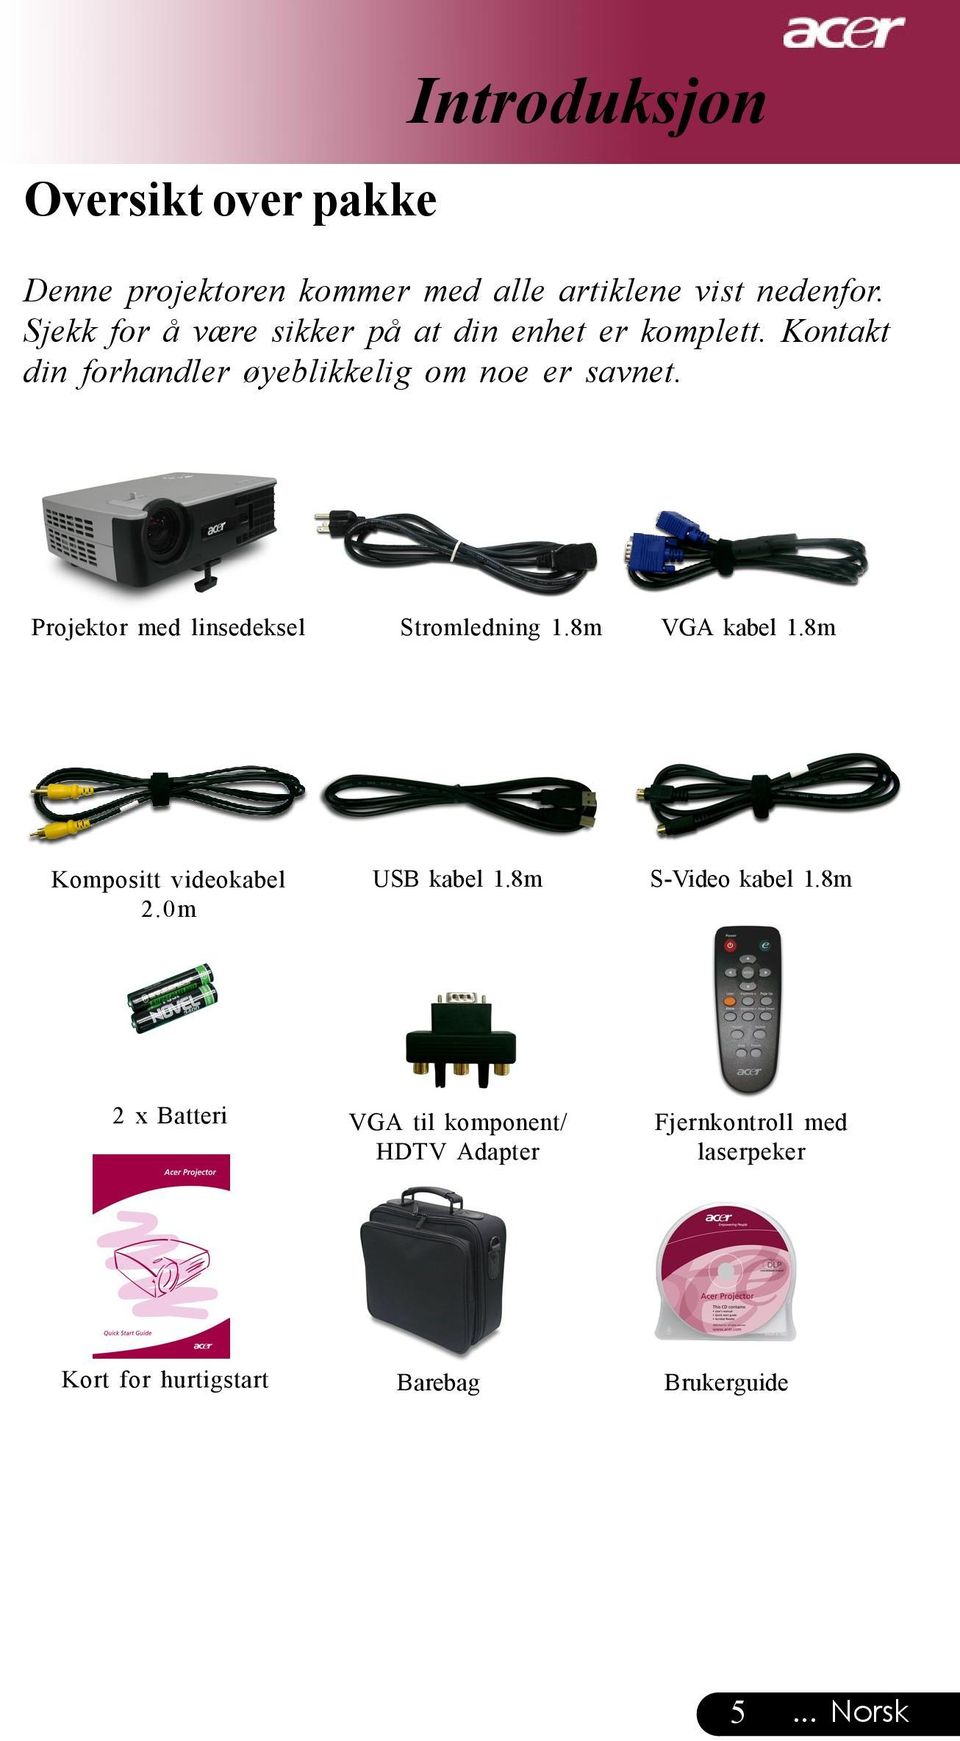 Projektor med linsedeksel Stromledning 1.8m VGA kabel 1.8m Kompositt videokabel 2.0m USB kabel 1.